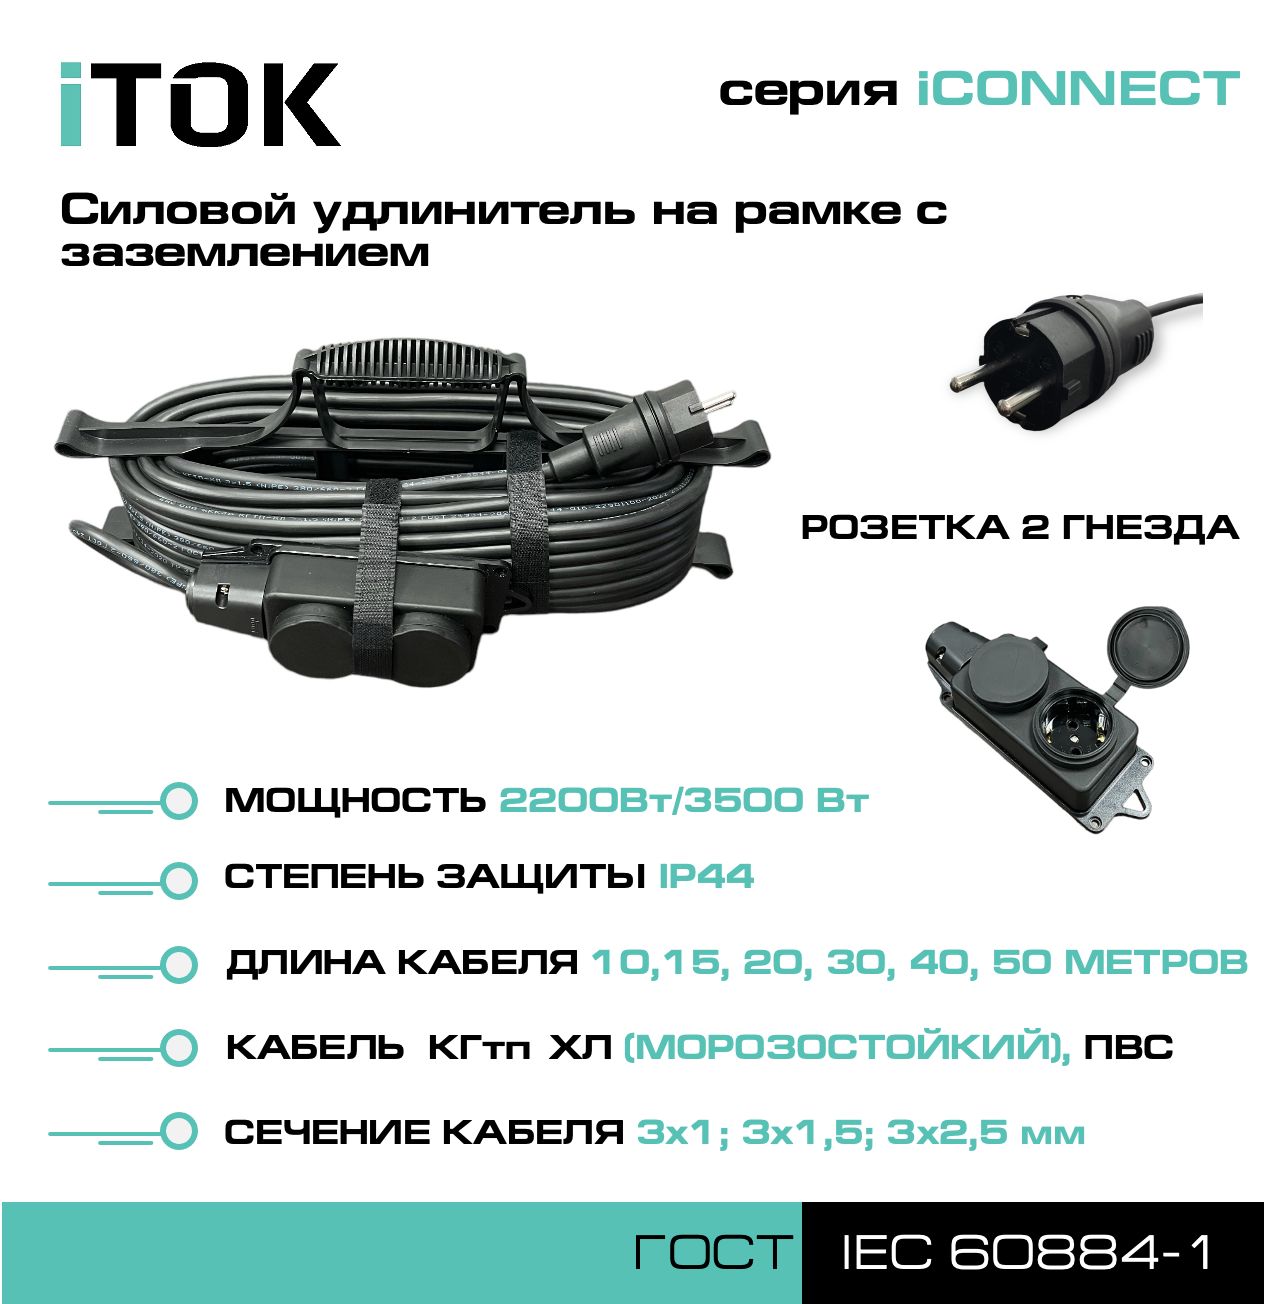 Удлинитель на рамке с заземлением серии iTOK iCONNECT КГтп-ХЛ 3х2,5 мм 2 гнезда IP44 15 м метчик для восстановления резьбы гнезда свечи зажигания ae